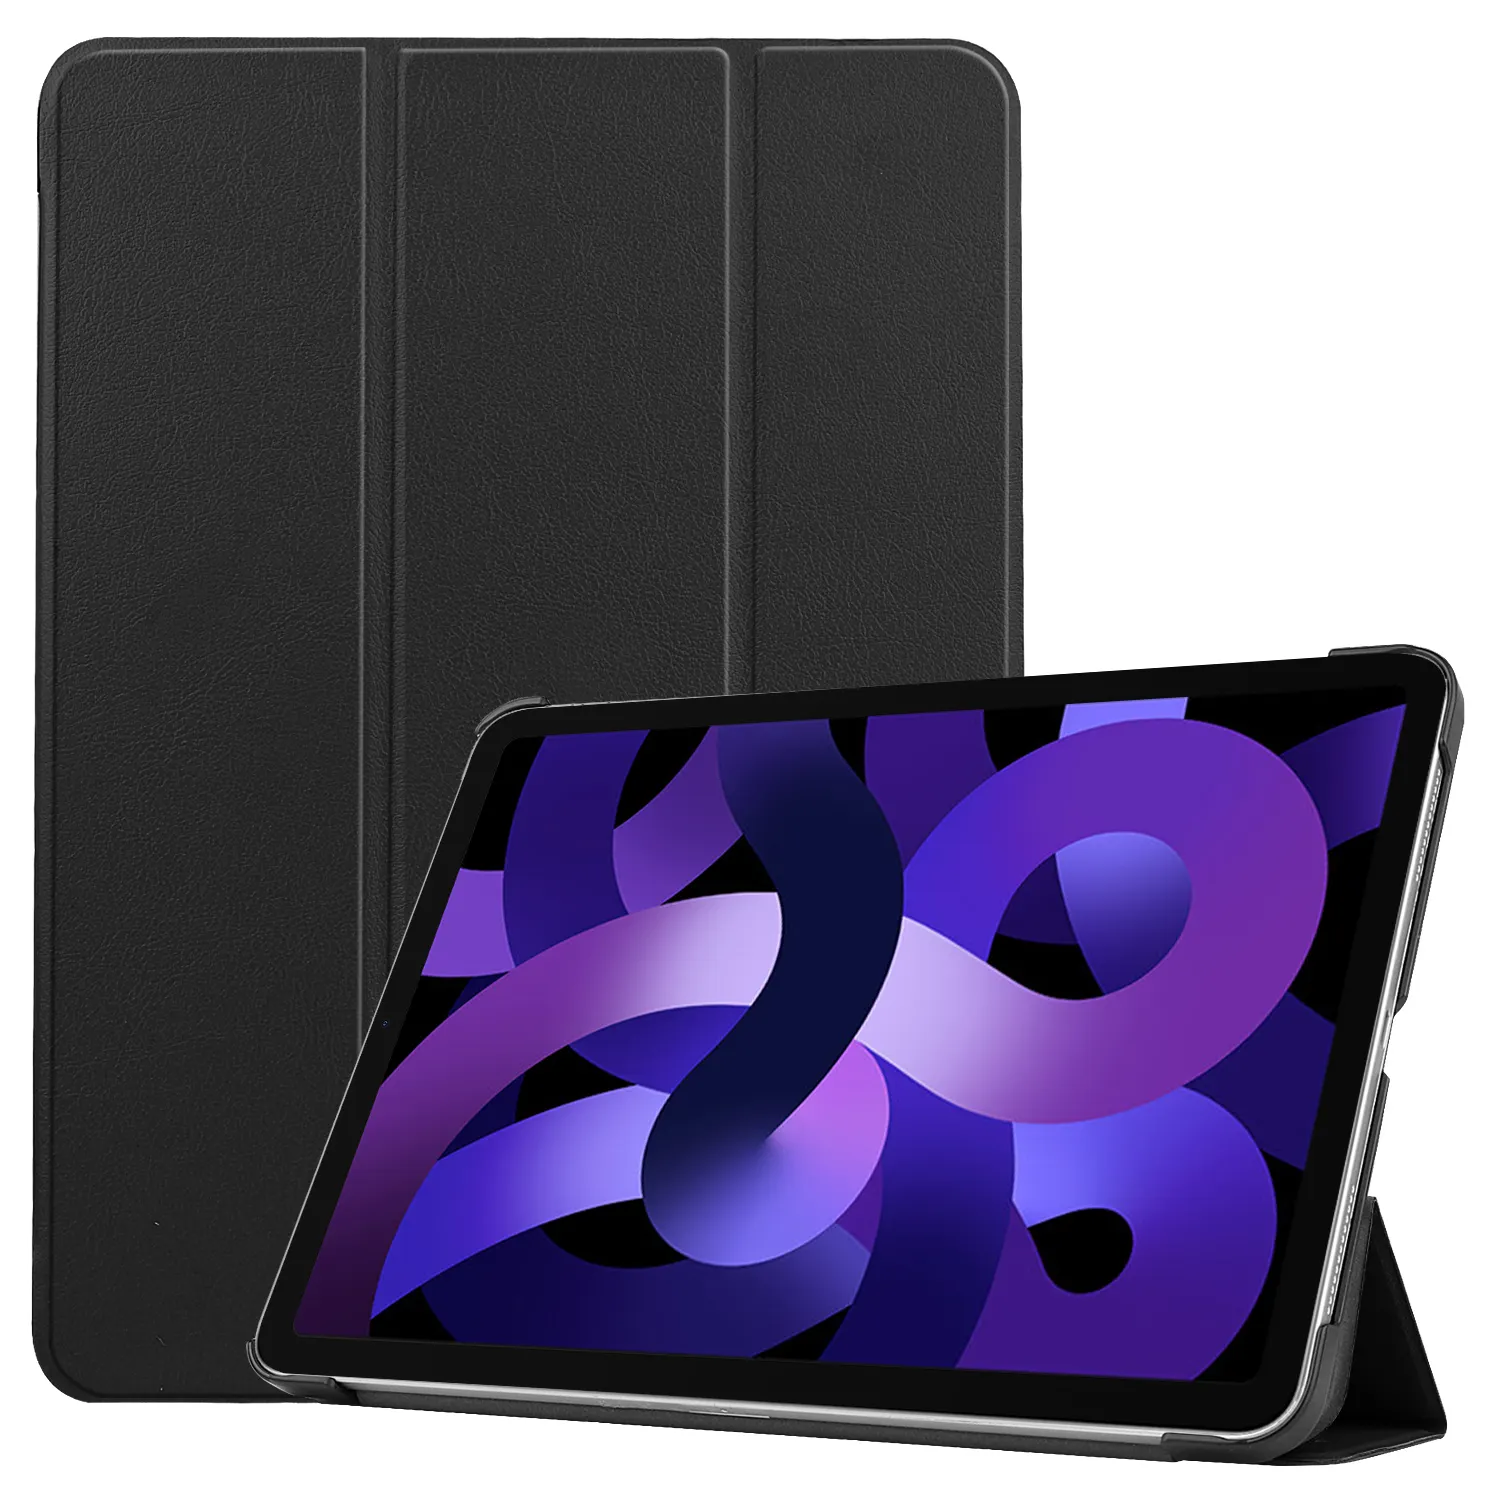 CYKE Trifold Tablet kapak Pc sert kabuk Pu deri 5th nesil Tablet kılıfı Apple Ipad hava 5 için hava 4 10.9 inç 2022 2020